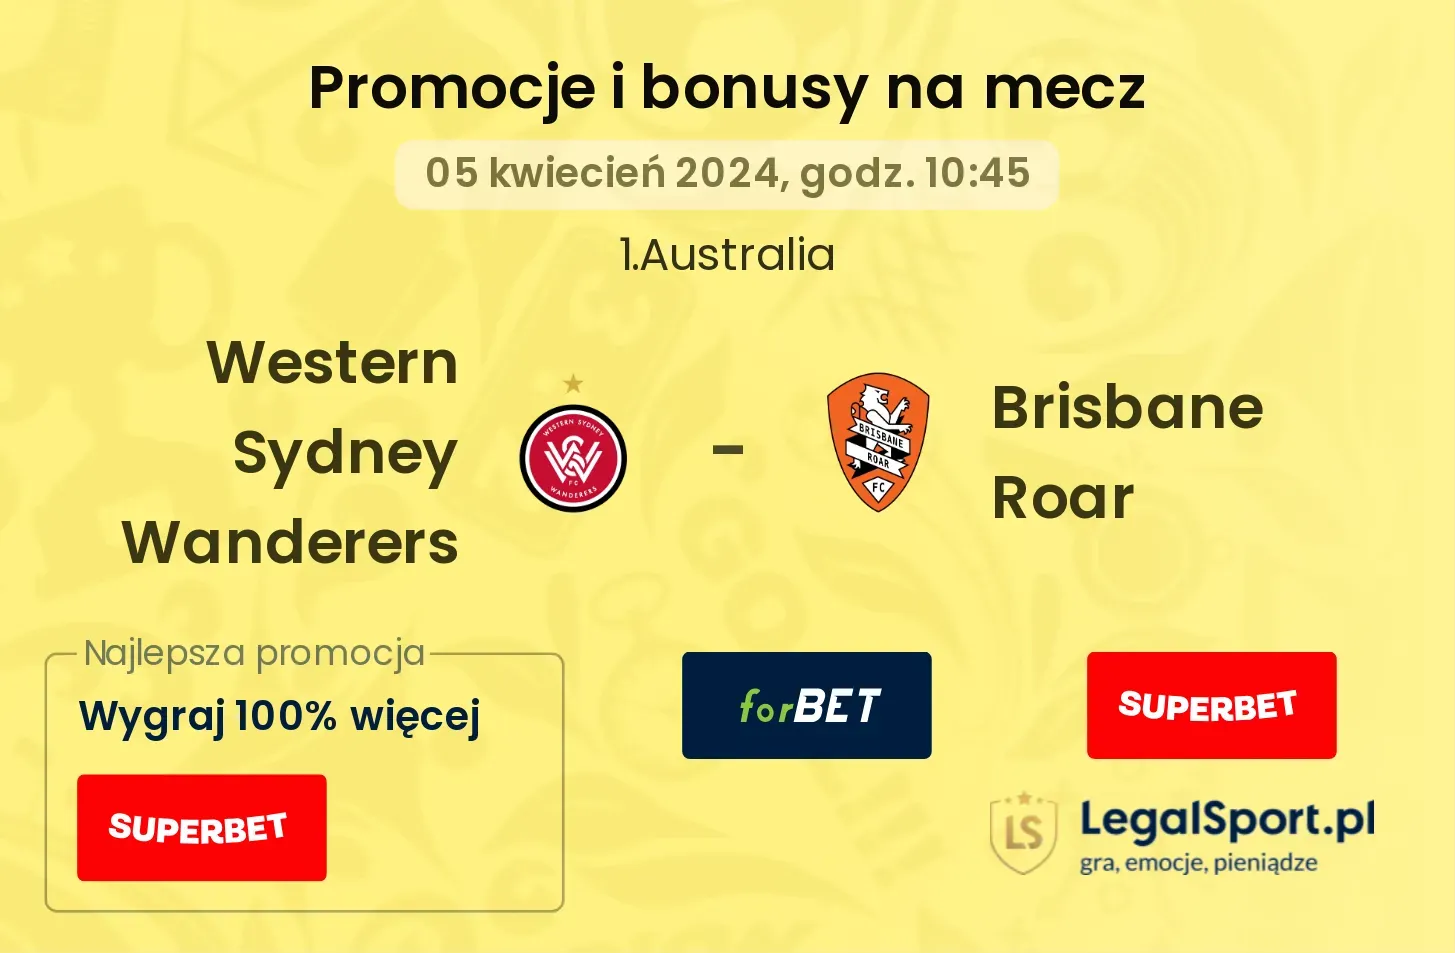 Western Sydney Wanderers - Brisbane Roar promocje bonusy na mecz